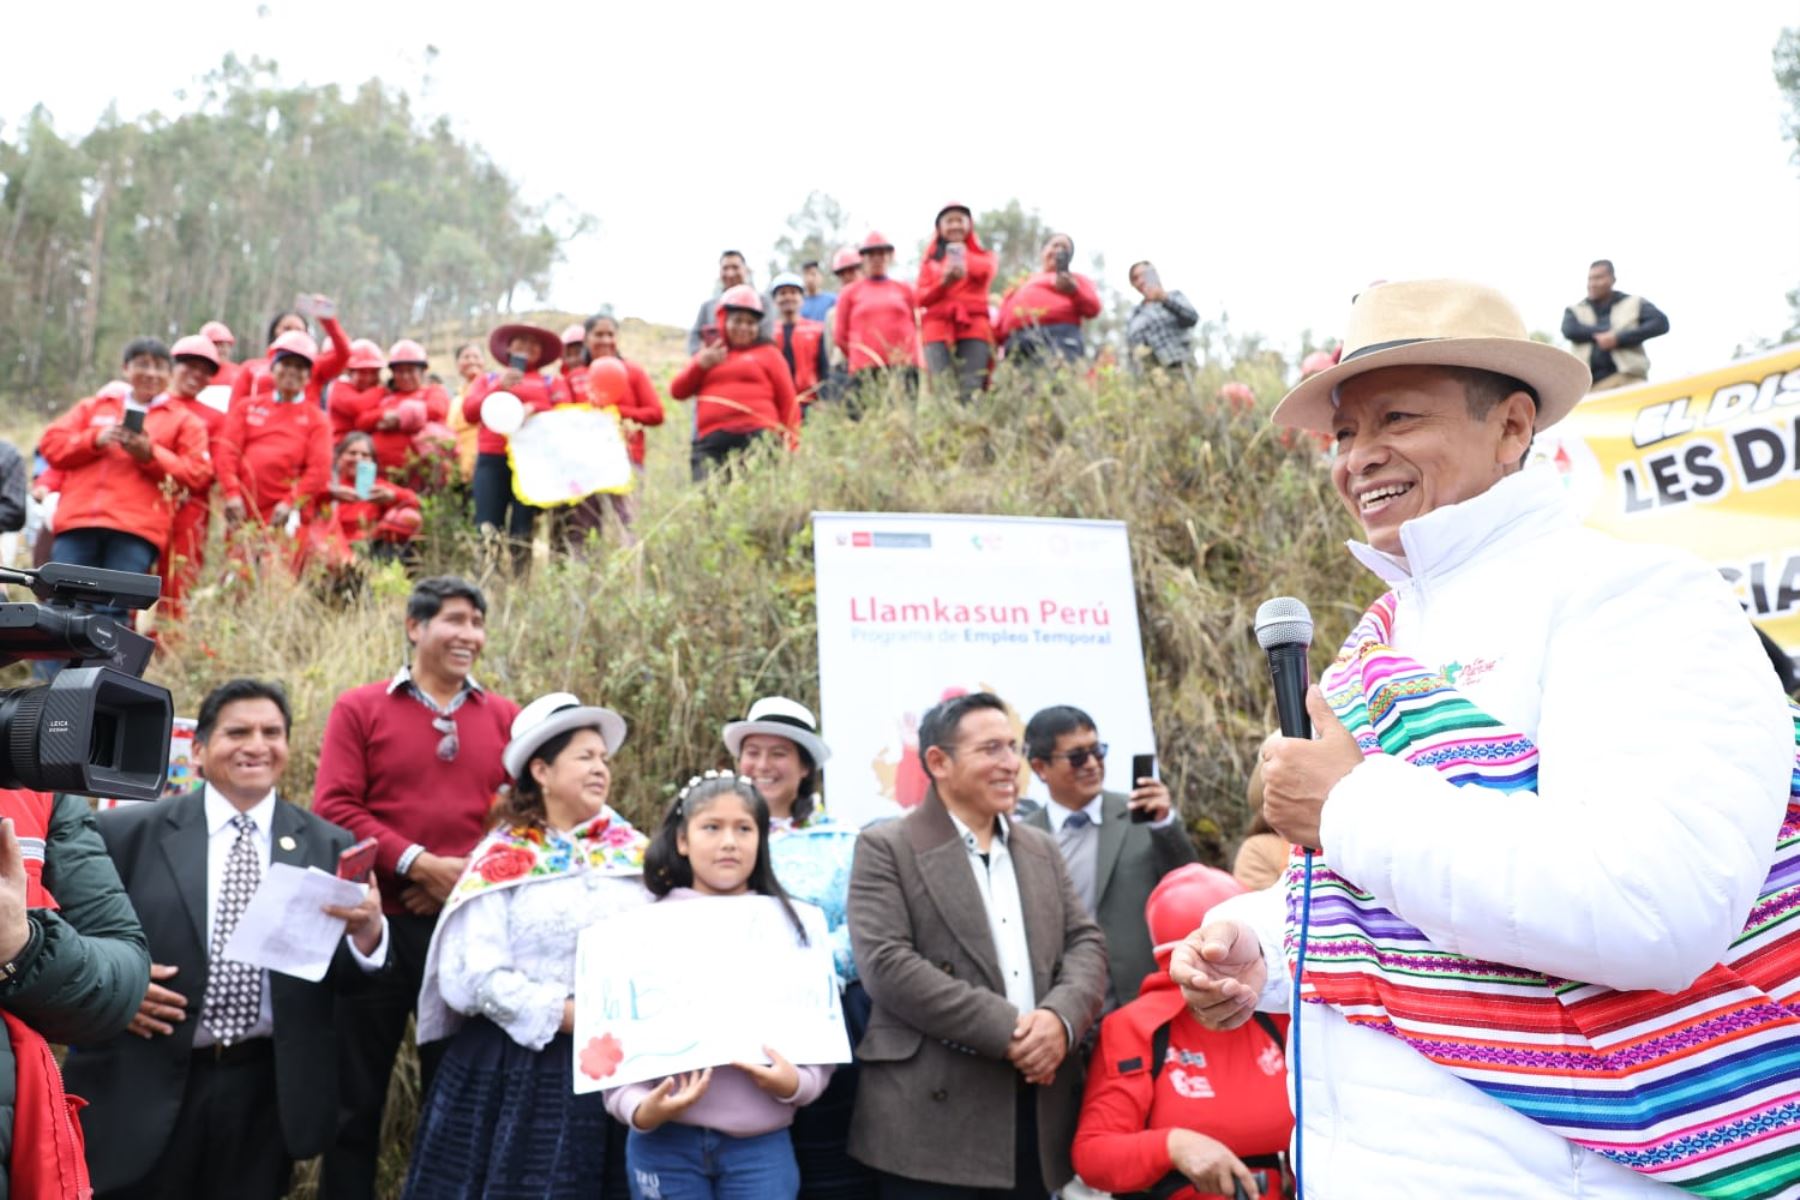 Ministerio de Trabajo anuncia más obras a través de Llamkasun Perú en Junín